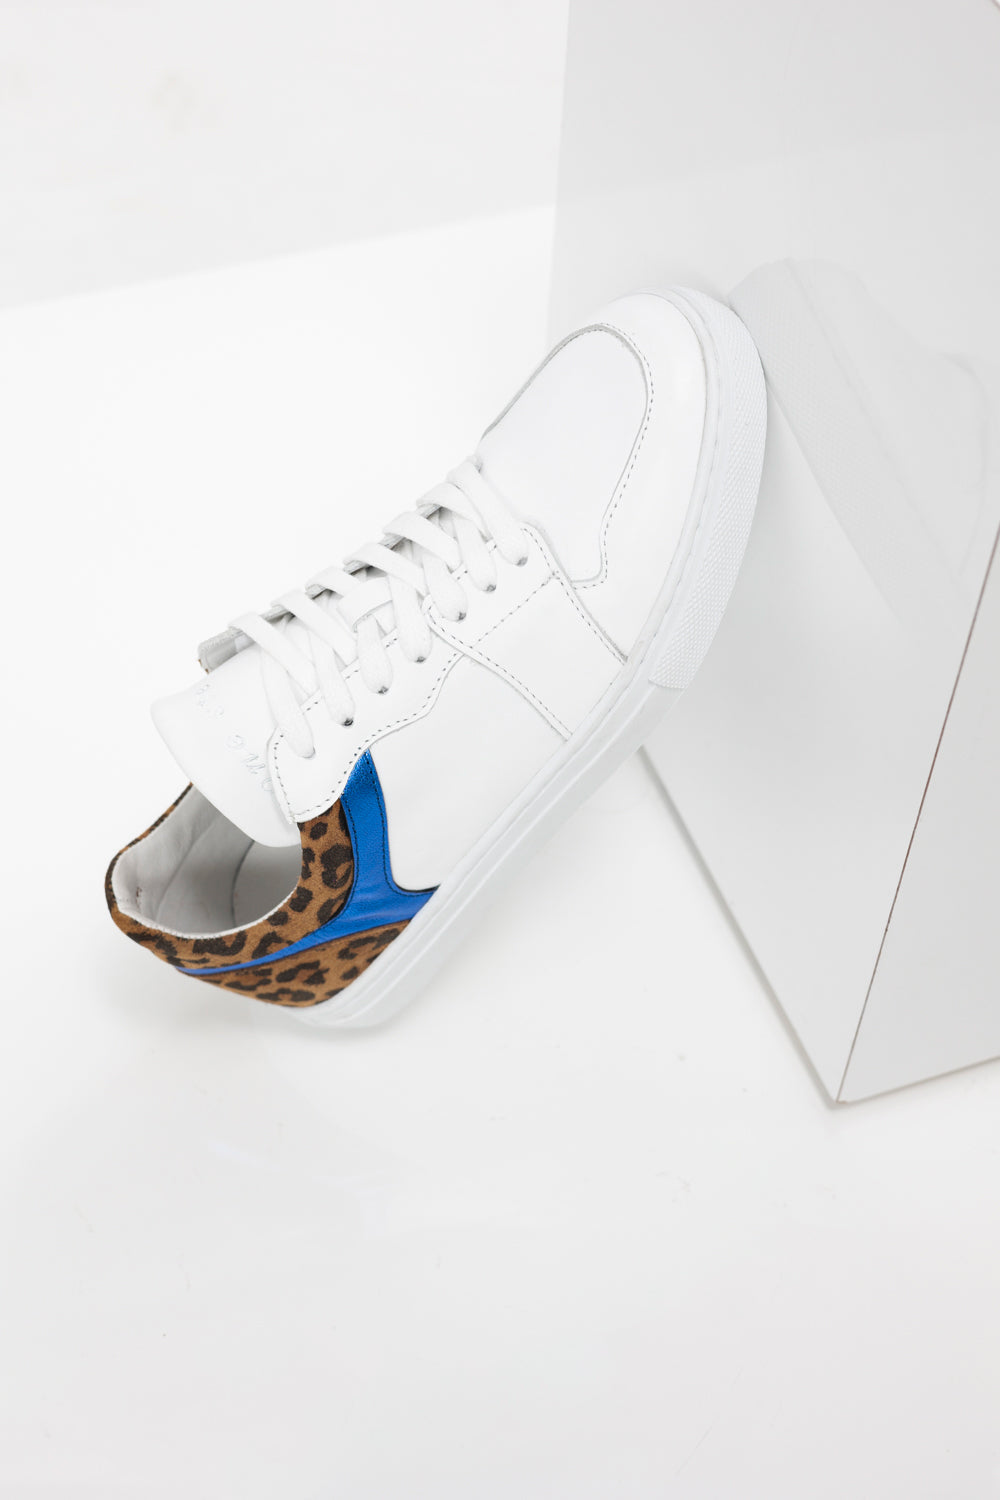 O.OLIVIA - Sneakers basses blanches en cuir avec découpes bleu métallisé et motif léopard